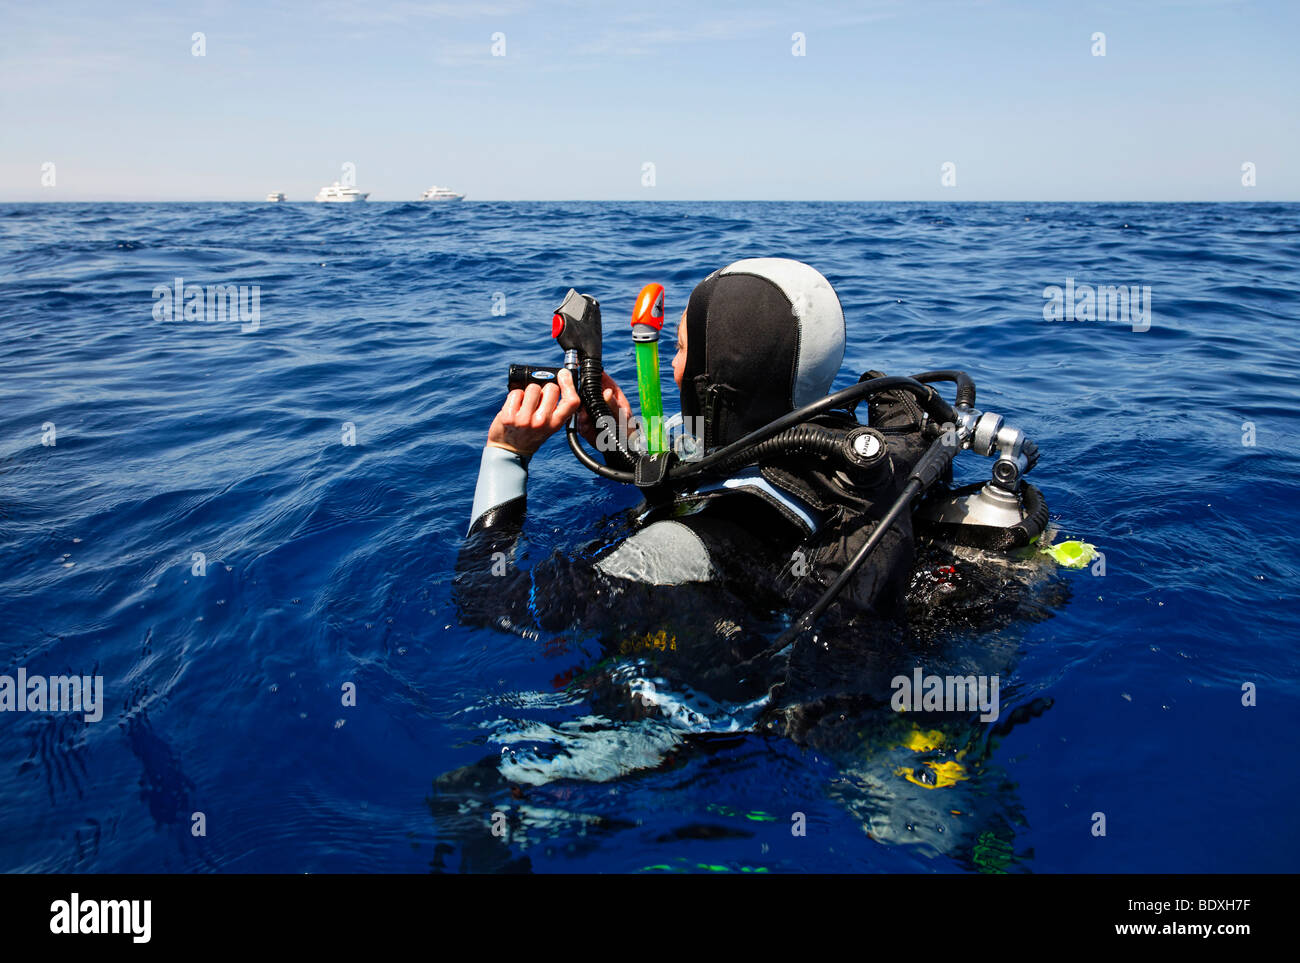 Plongeur à la dérive en mer tente d'obtenir l'attention des gens sur les bateaux de plongée à l'horizon avec un signal-corne, Egypte, Mer rouge, Banque D'Images